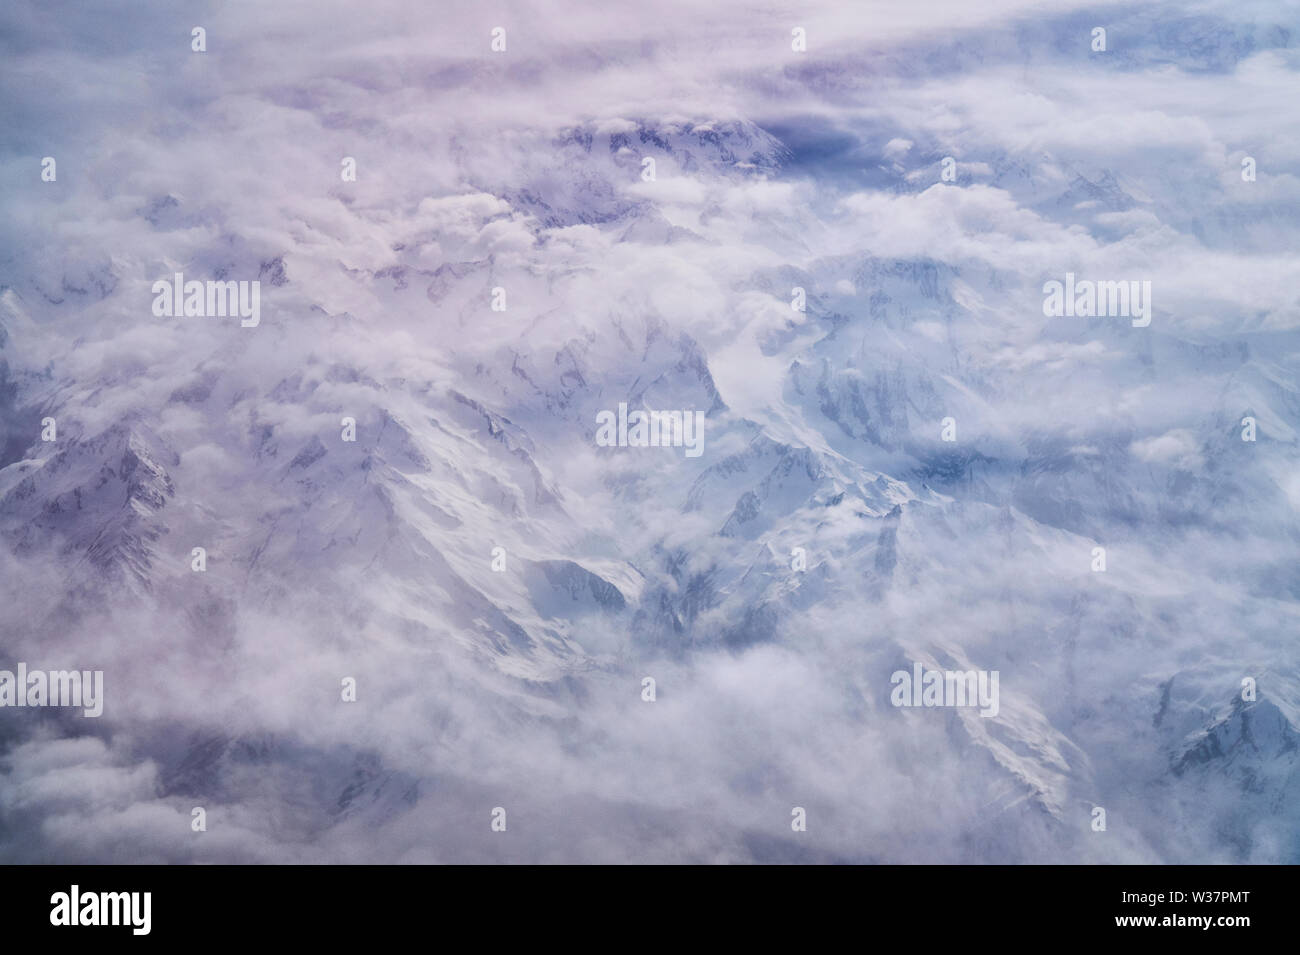 Luftbild der Alpen unter einer dichten milchigen Wolkendecke ragen die Gipfel der Gebirge mit Eis und Schnee bedeckten Bergen hervor. Foto Stock